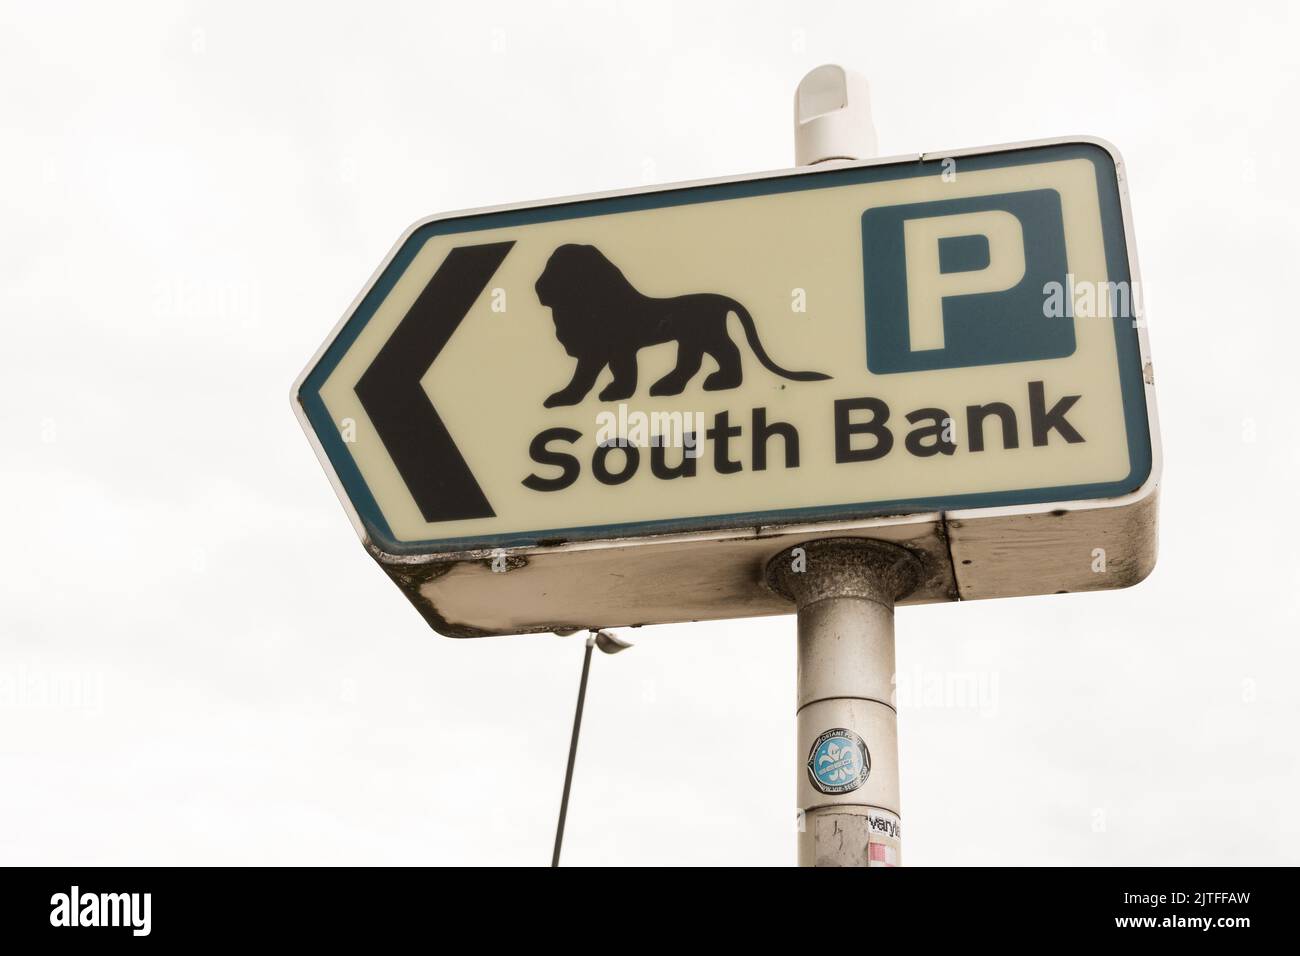 Gros plan d'une signalisation rétro du Festival of Britain South Bank sur le pont Waterloo, Londres, Waterloo, Lambeth, Angleterre, ROYAUME-UNI. Banque D'Images